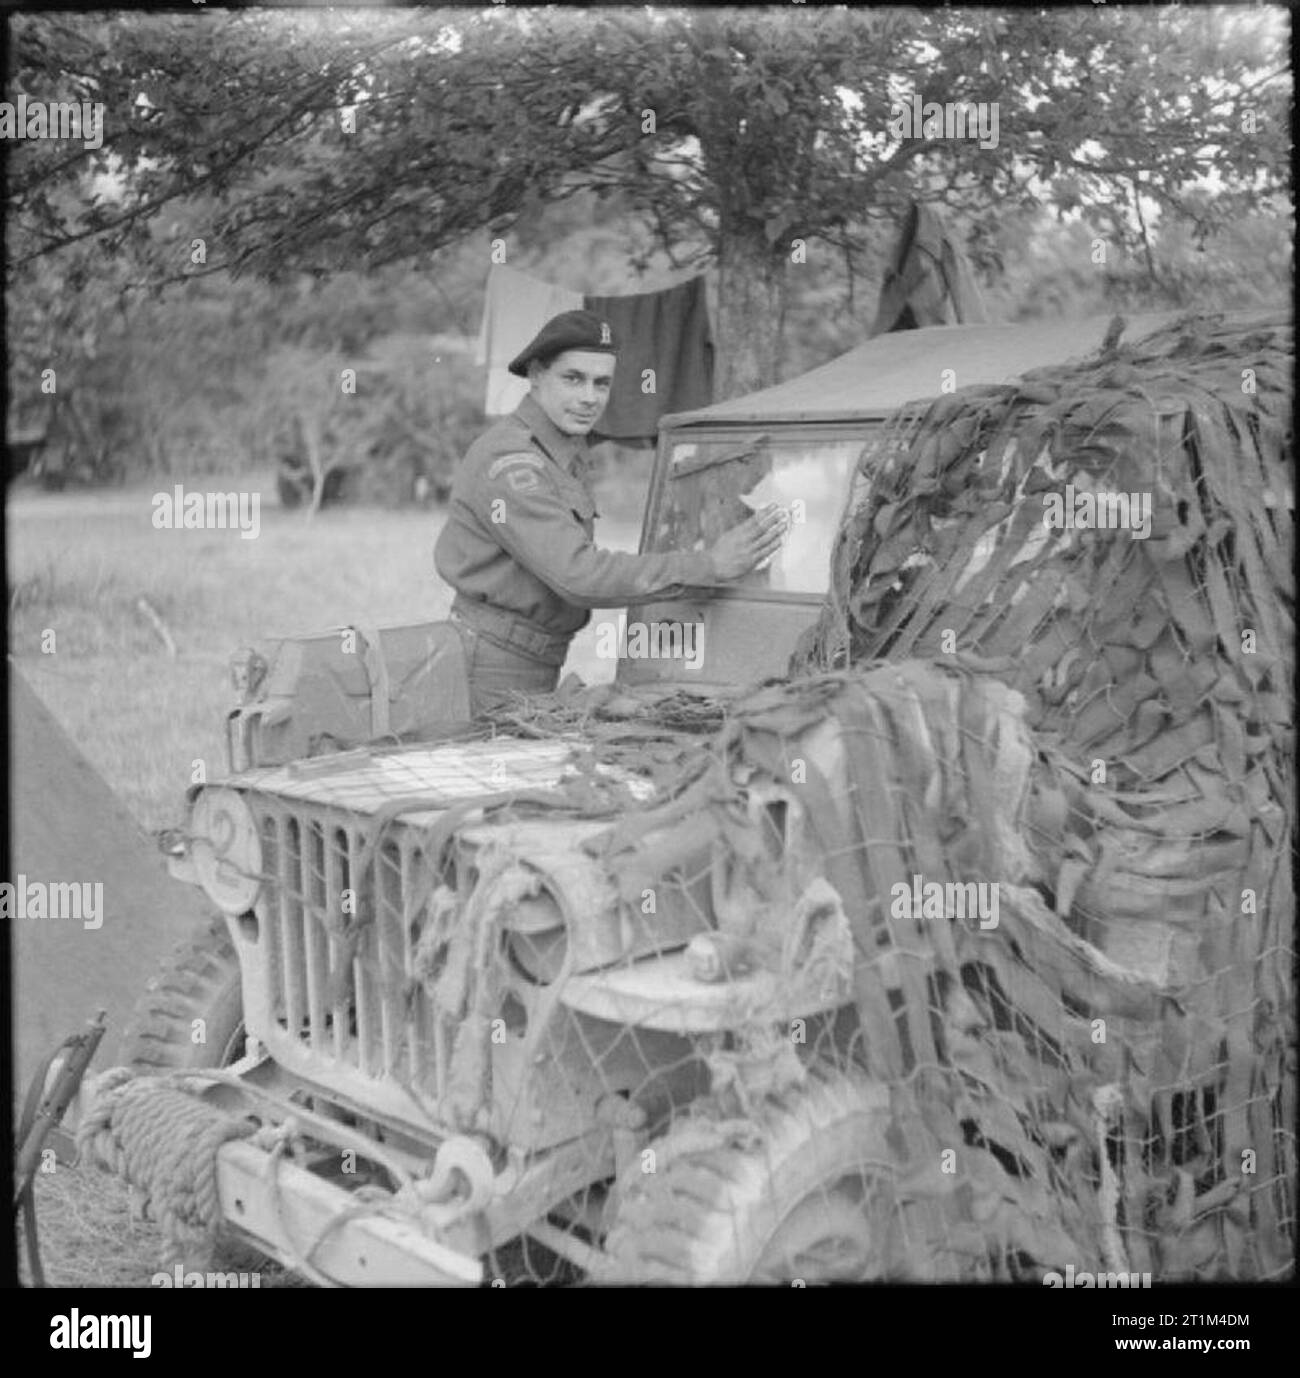 L'Armée britannique en Normandie, juillet 1944 Trooper M Fraser, du Corps Blindé Royal, 11e Division blindée, le nettoyage du pare-brise d'une Jeep Willys MB. Remarque le 'red-horned bull' Insigne de la 11e Division blindée sous le pare-brise. Banque D'Images